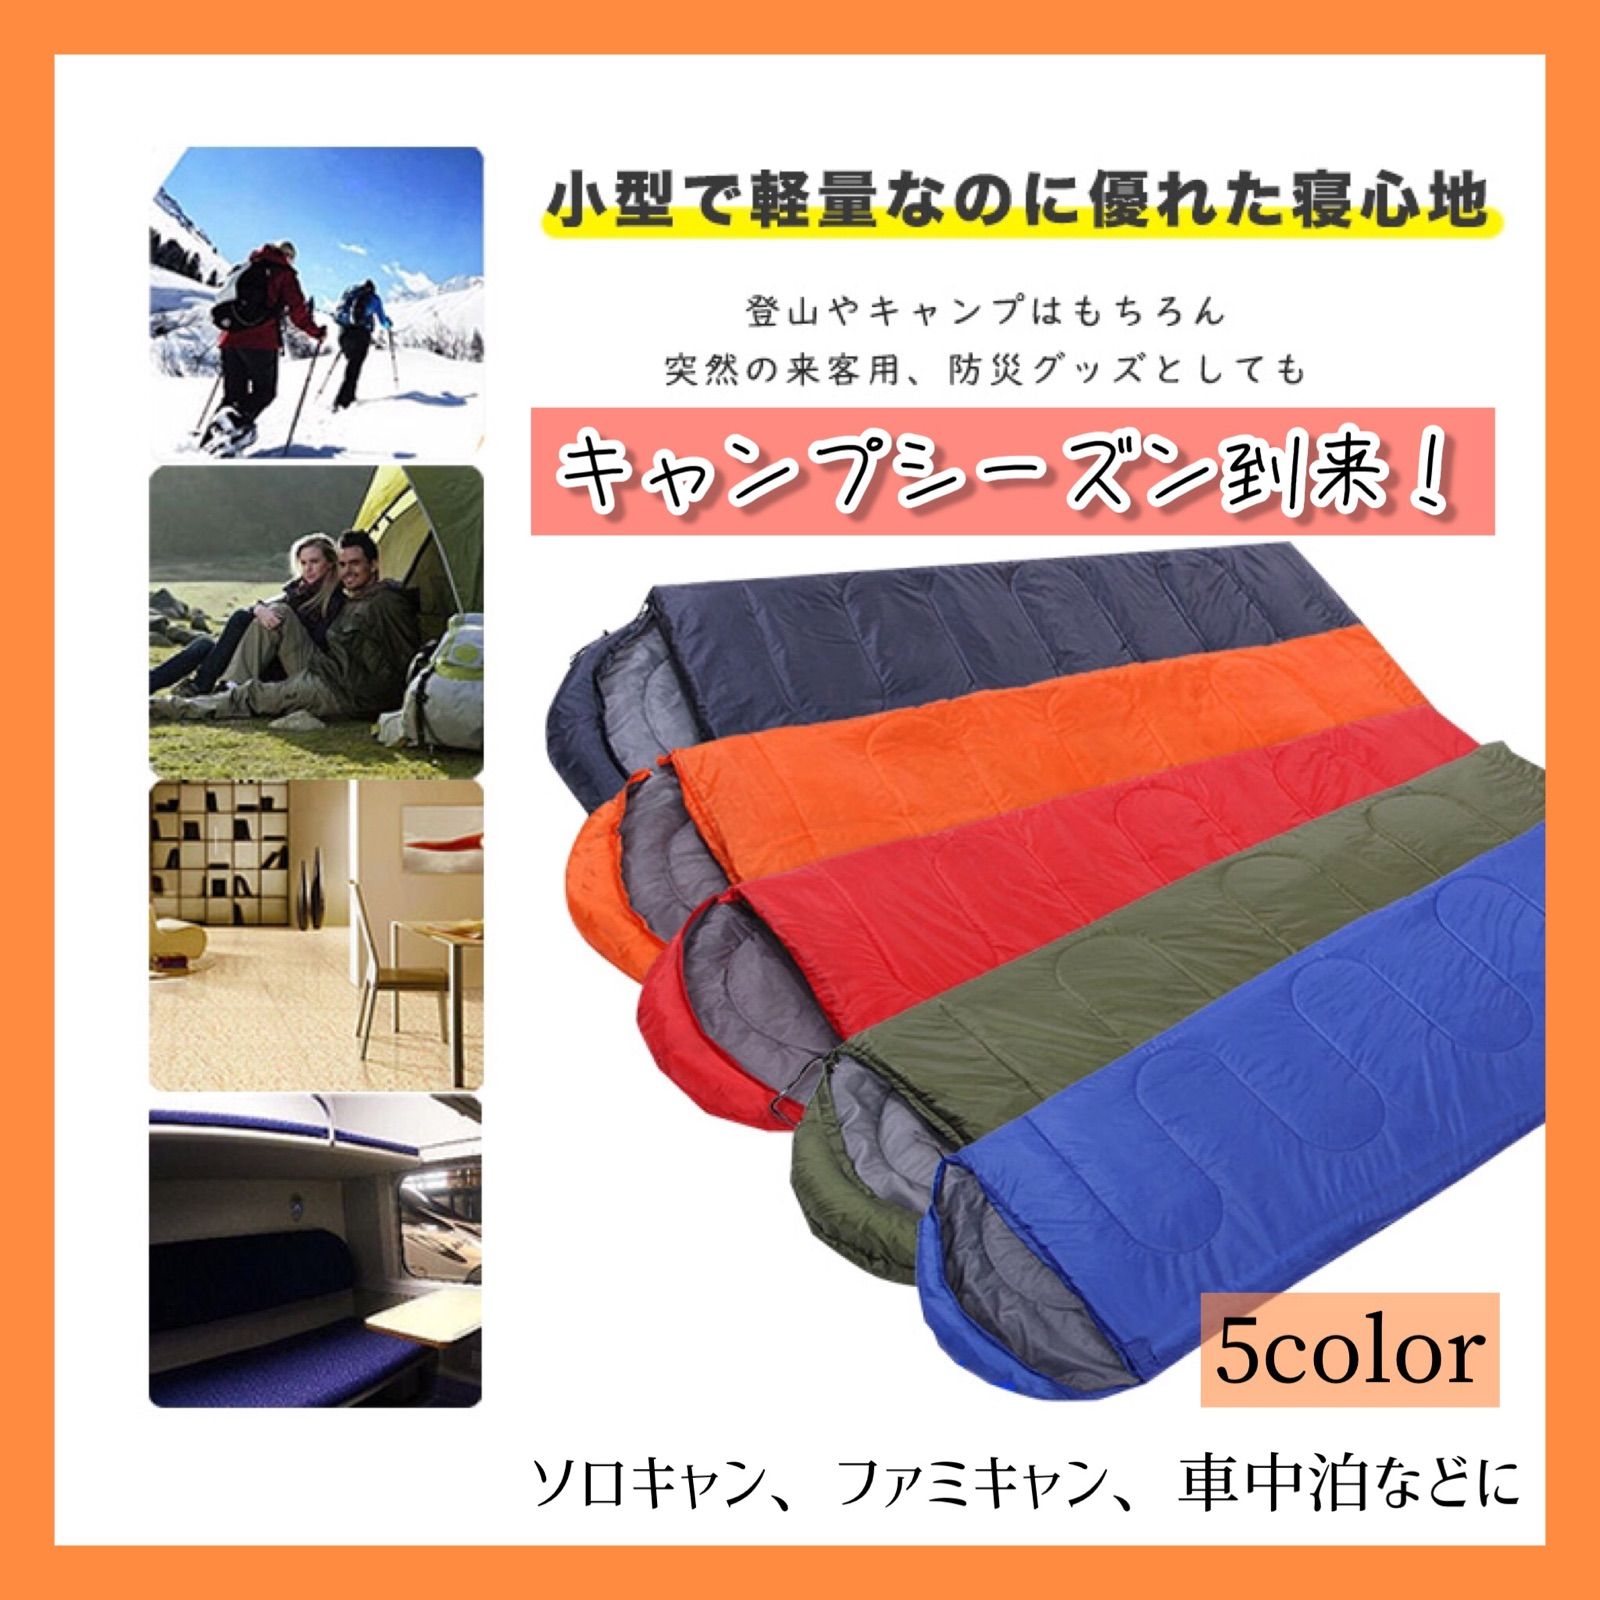 寝袋 シュラフ 封筒型 洗える寝袋 キャンプ用寝具 耐寒温度